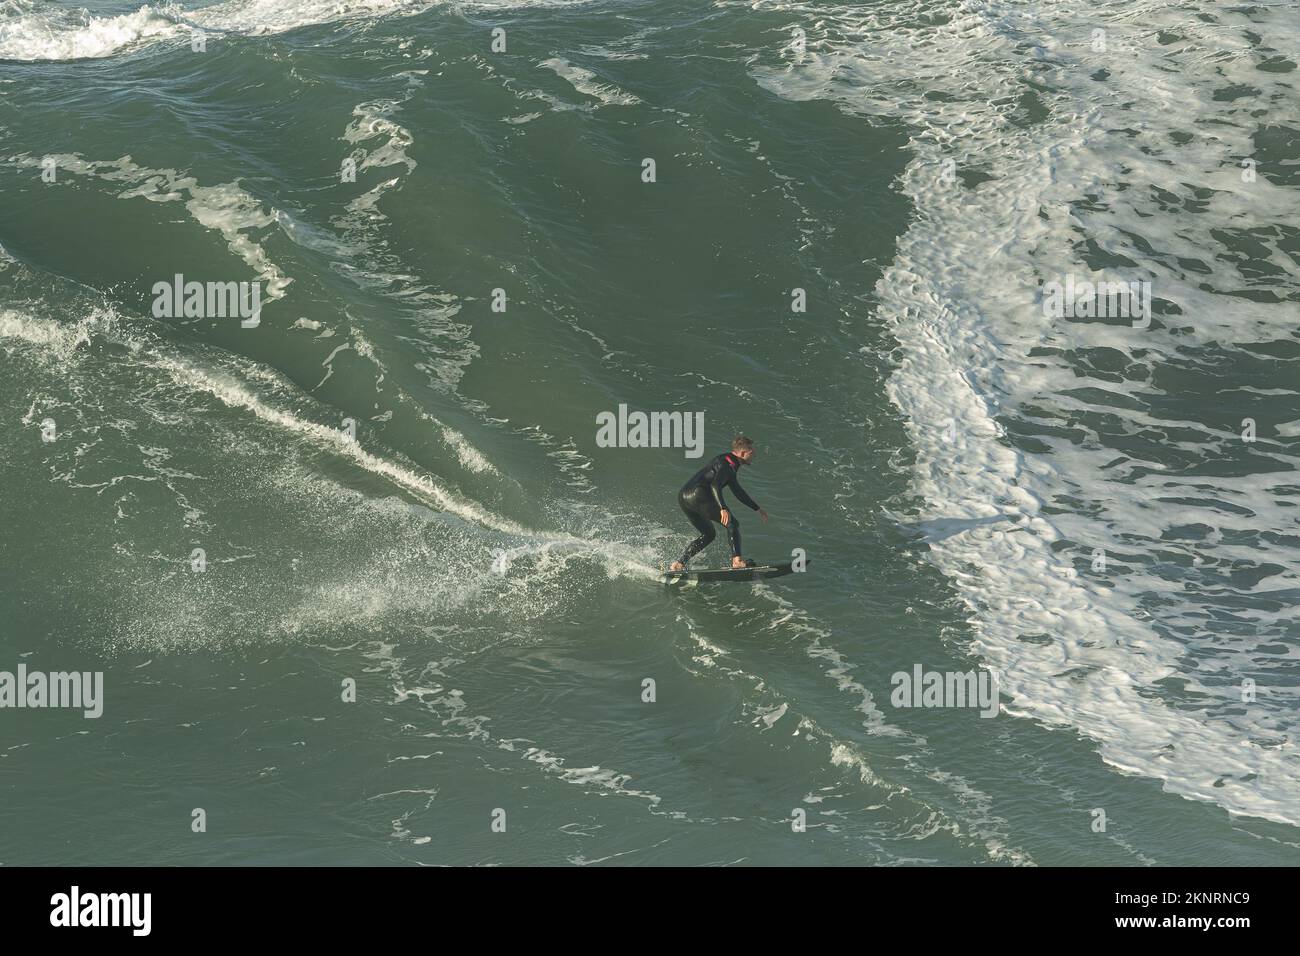 Surf Tow-in ou surf Big Wave à Praia do Norte, Nazaré, Portugal. Banque D'Images